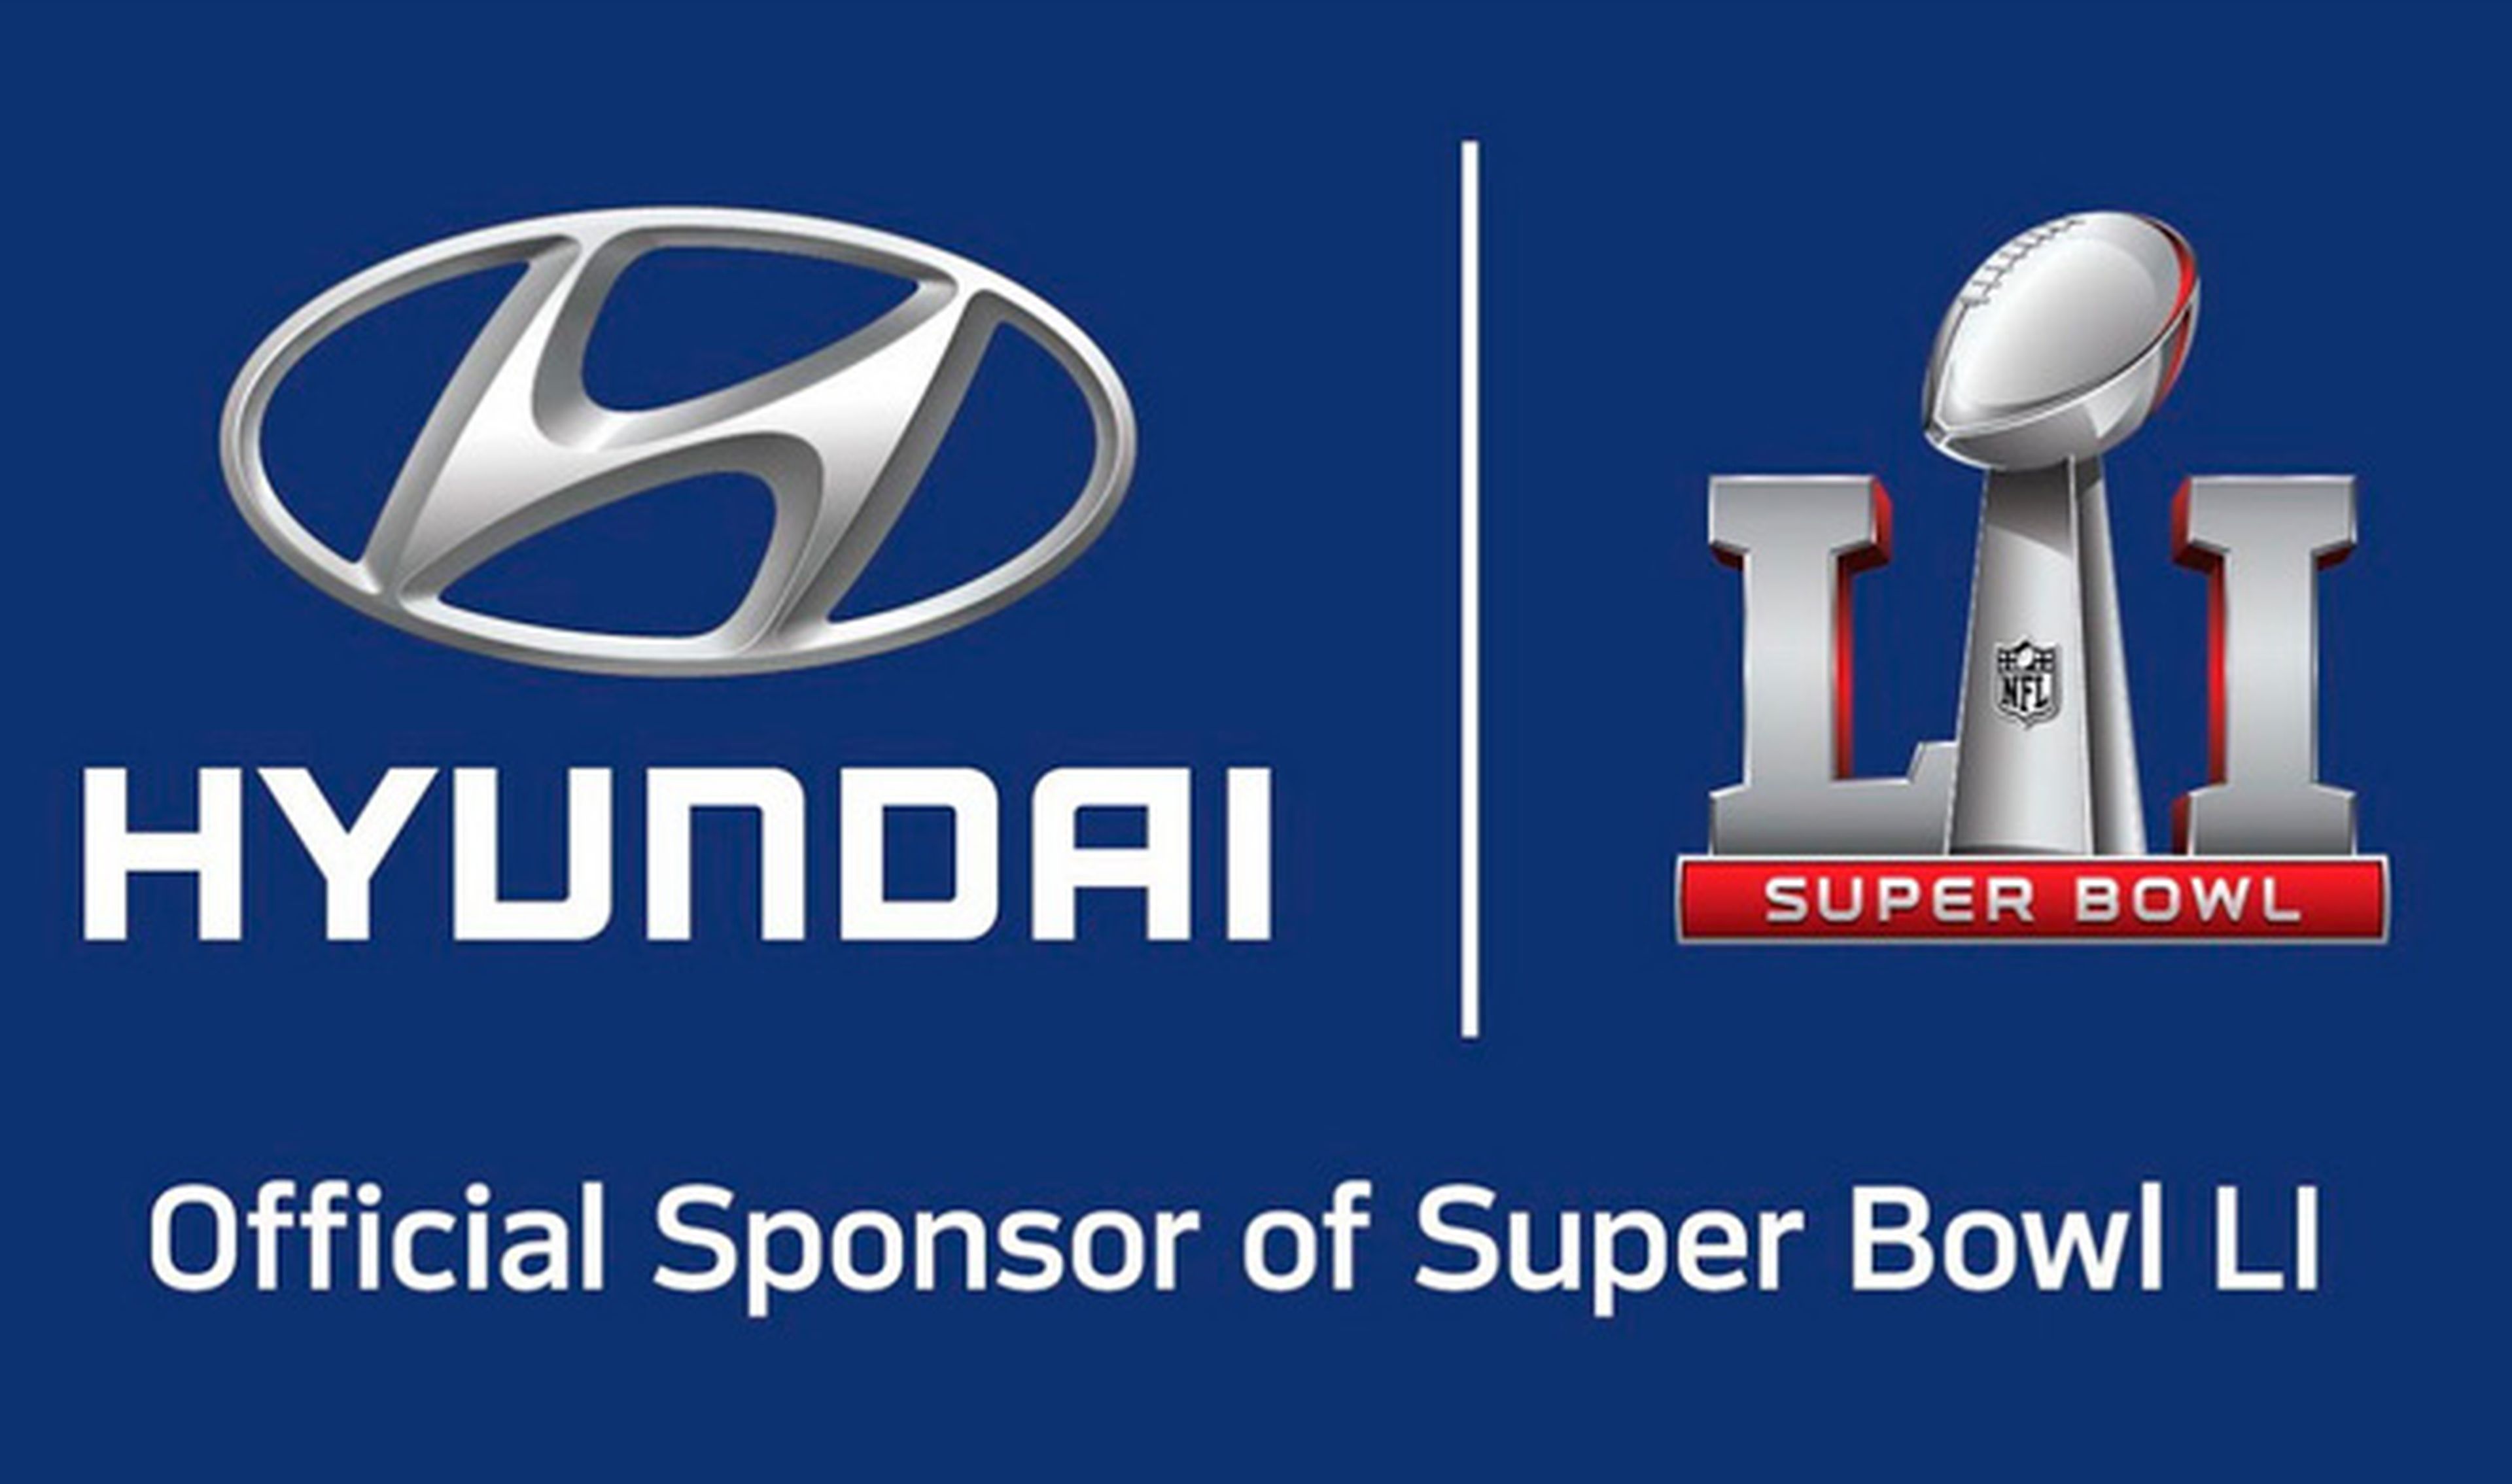 El revolucionario anuncio de Hyundai en la Super Bowl